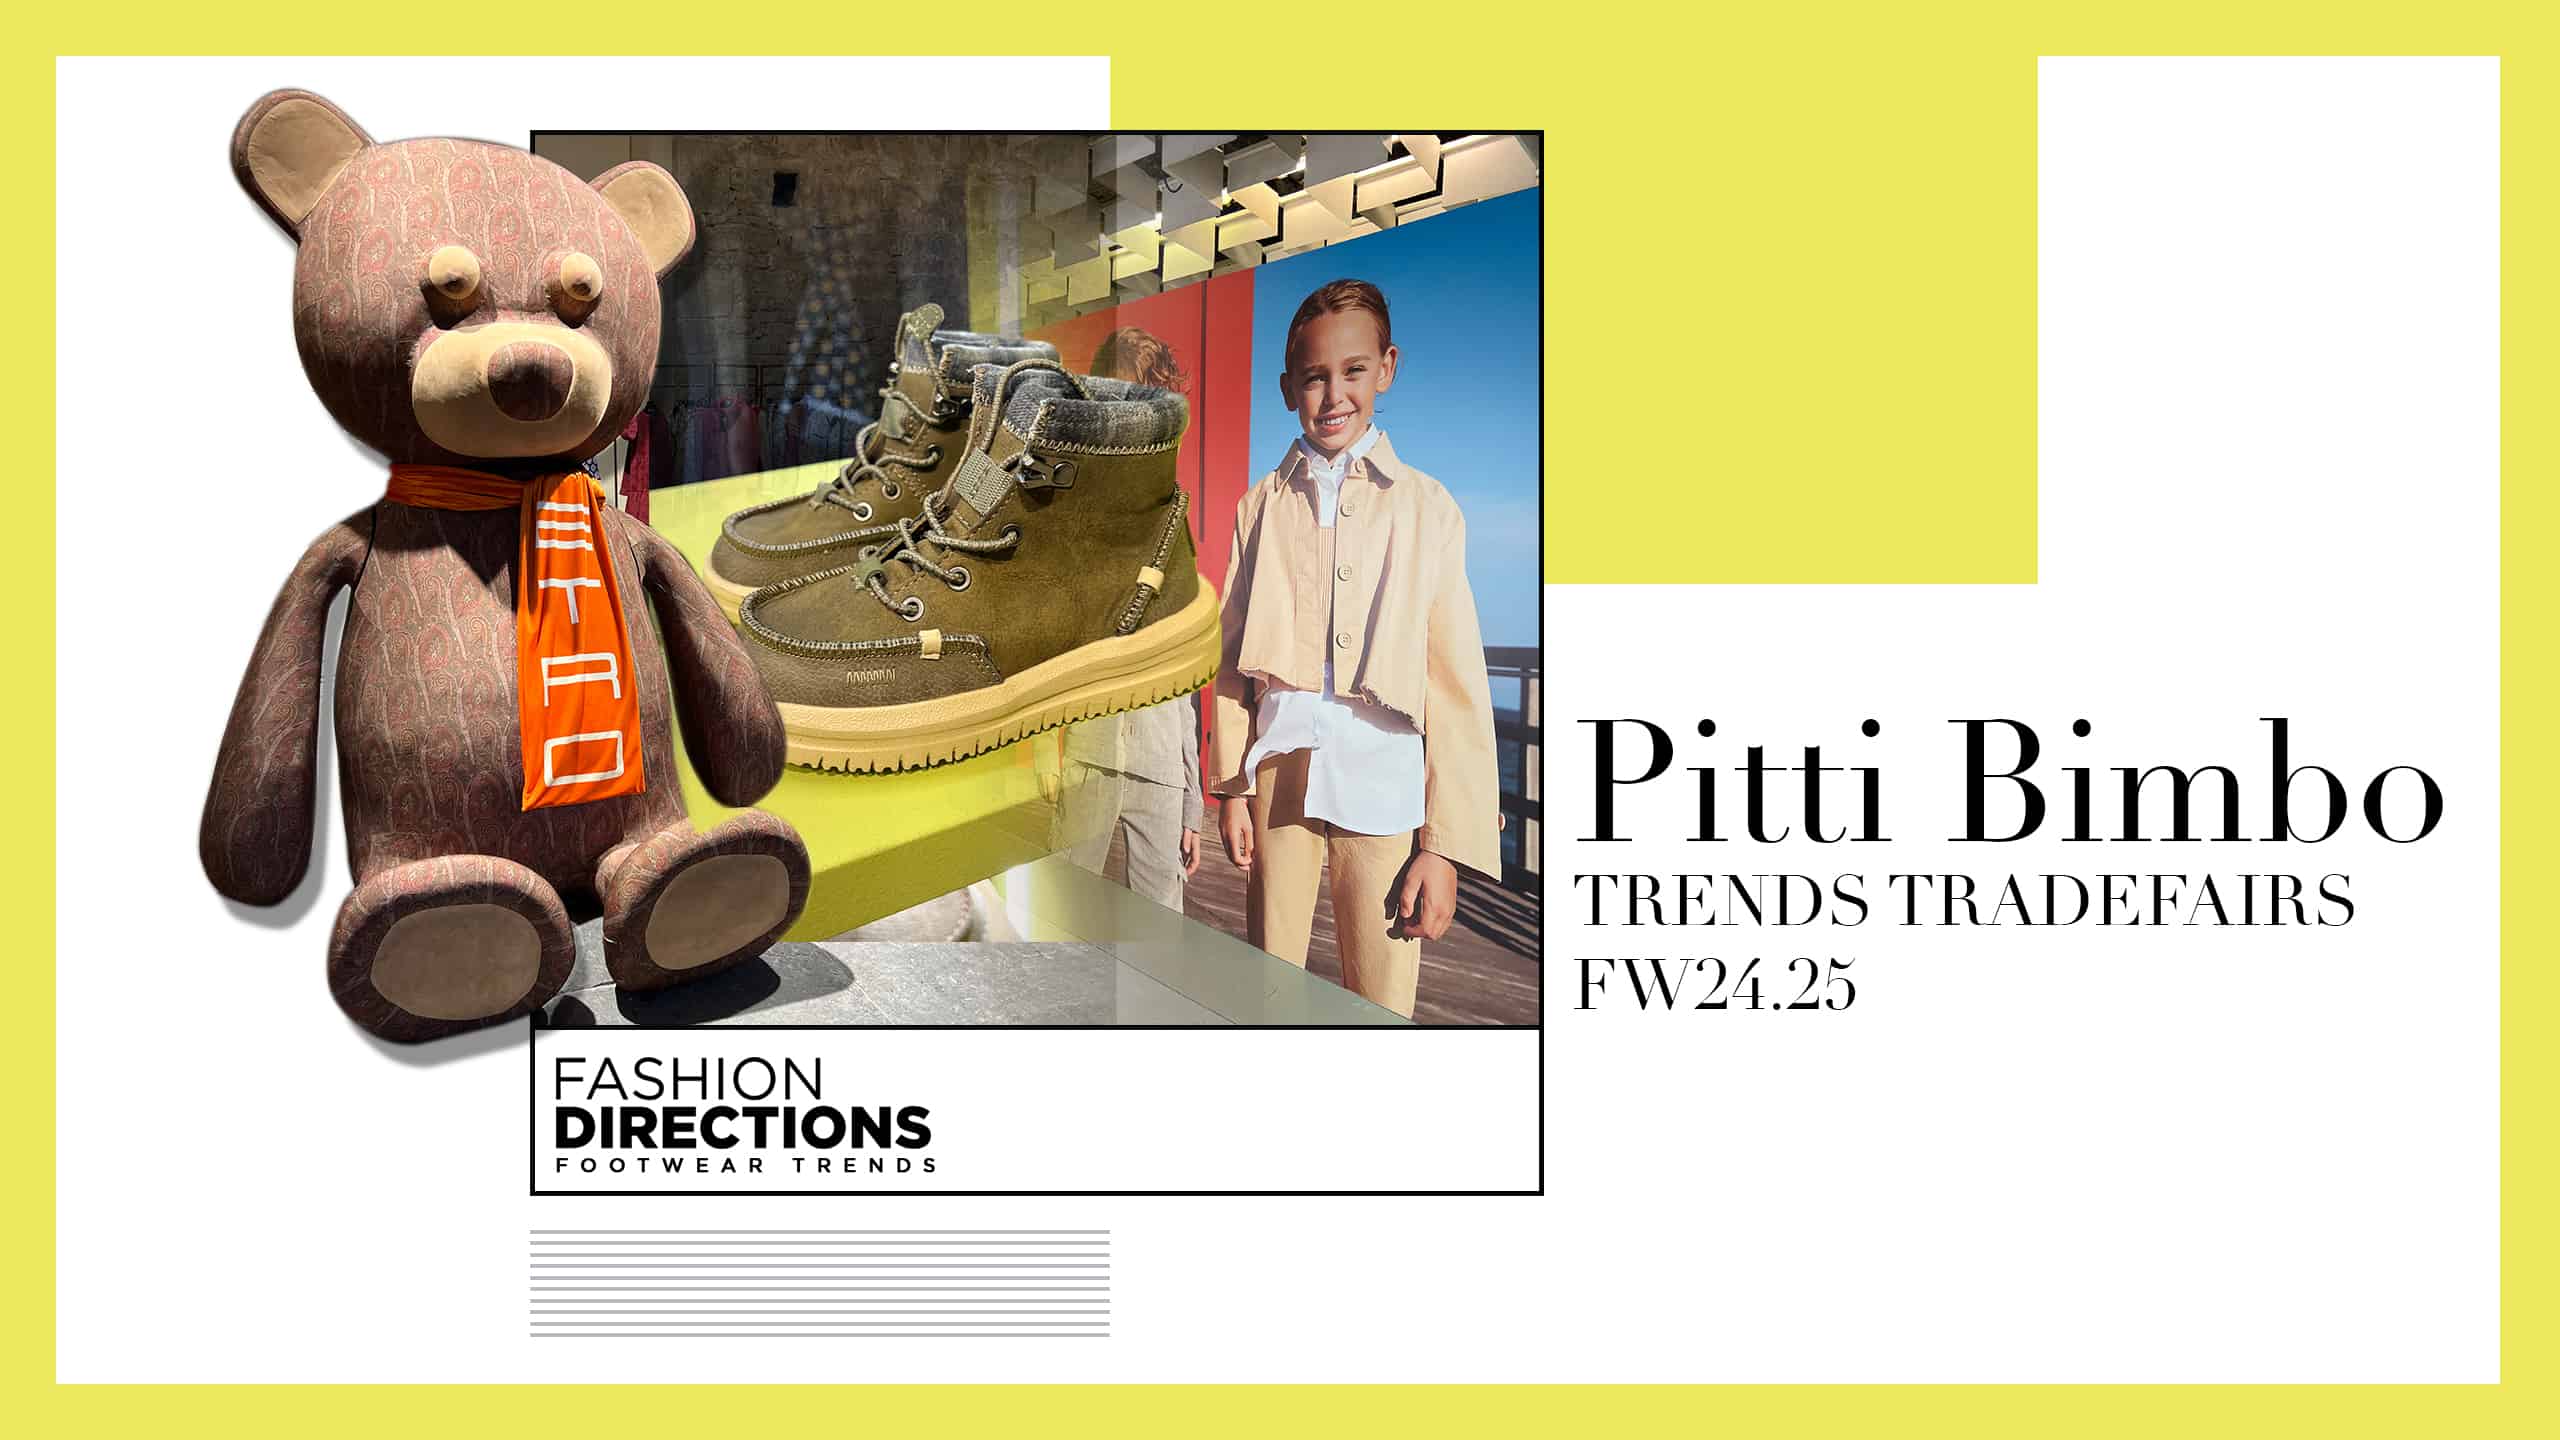 Pitti Bimbo Trends Tradefairs fw24.25